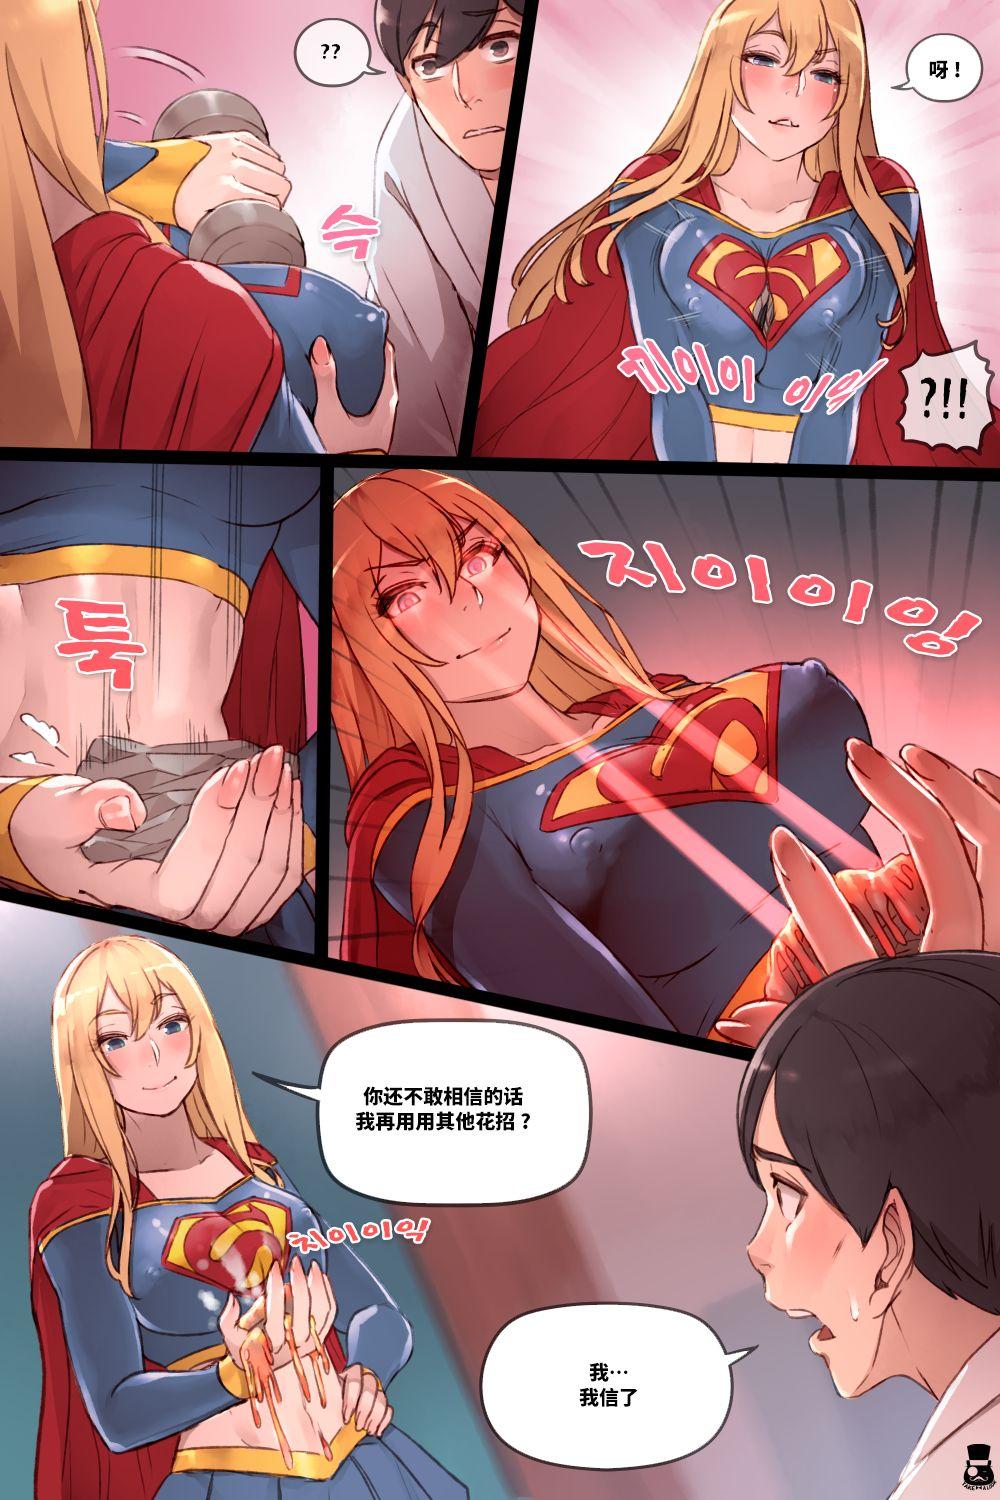 Supergirl's Secret Service 2